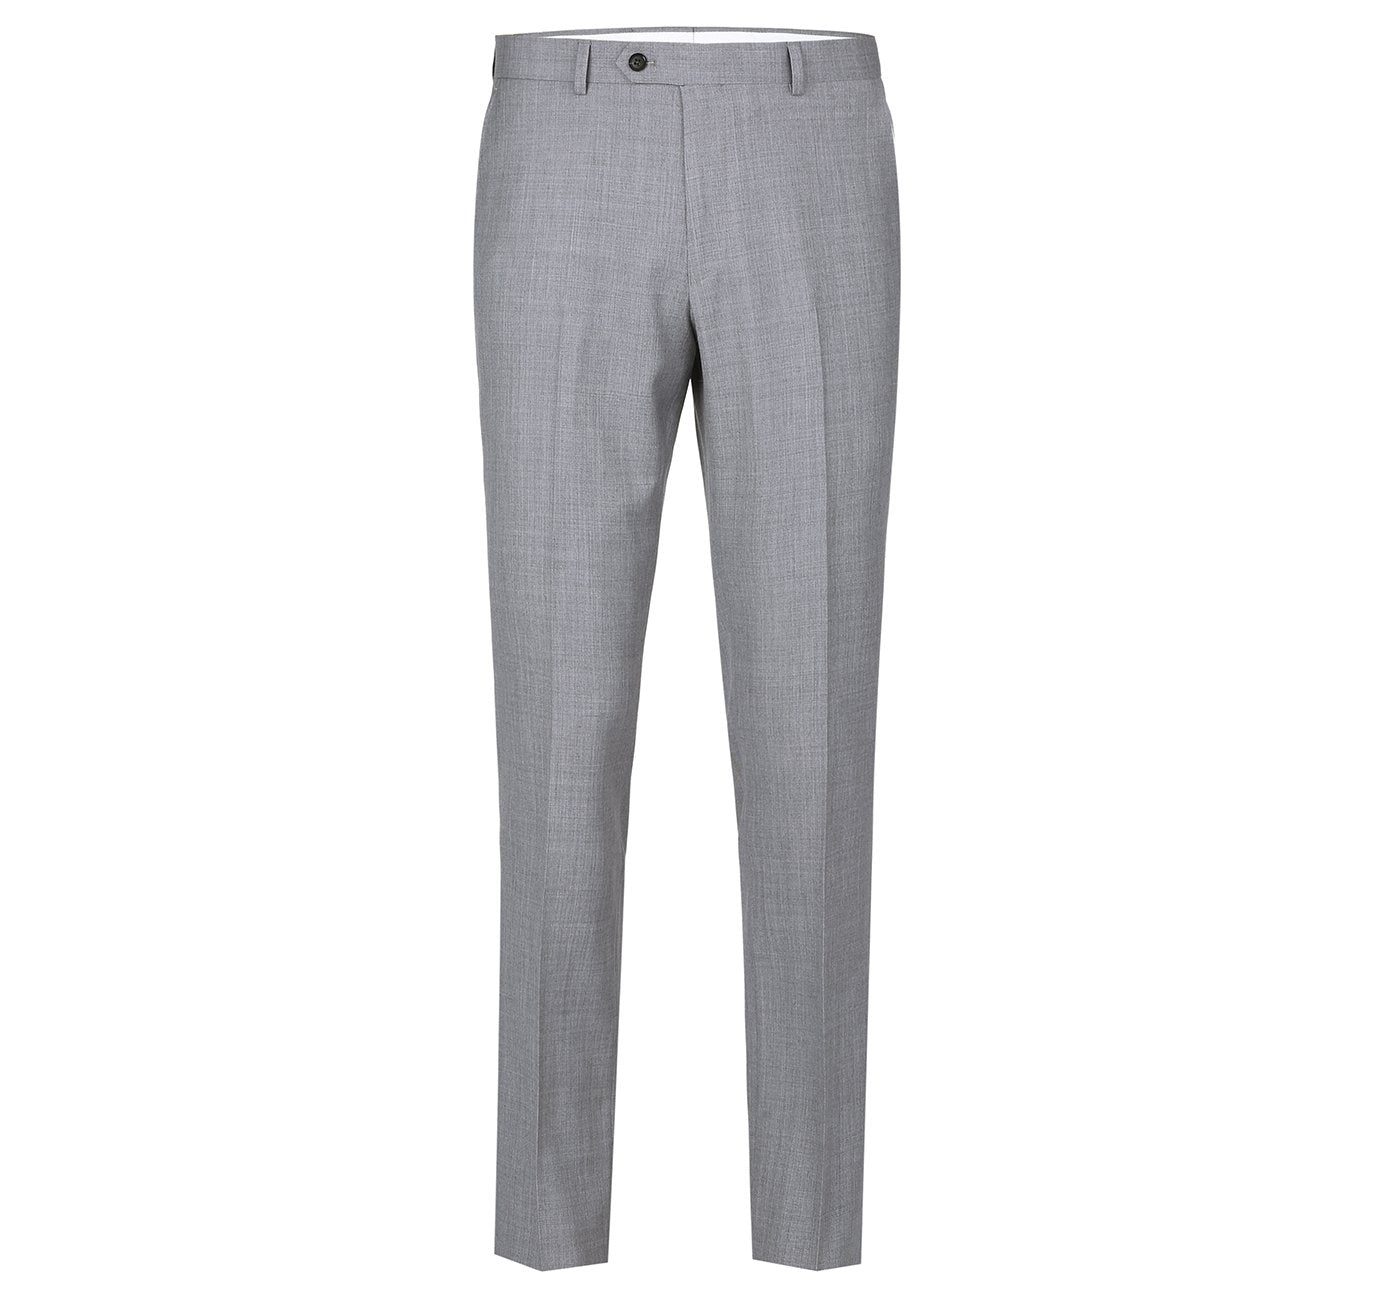 508-5 Men's Light Grey Classic Fit Flat Front Wool Suit Pant